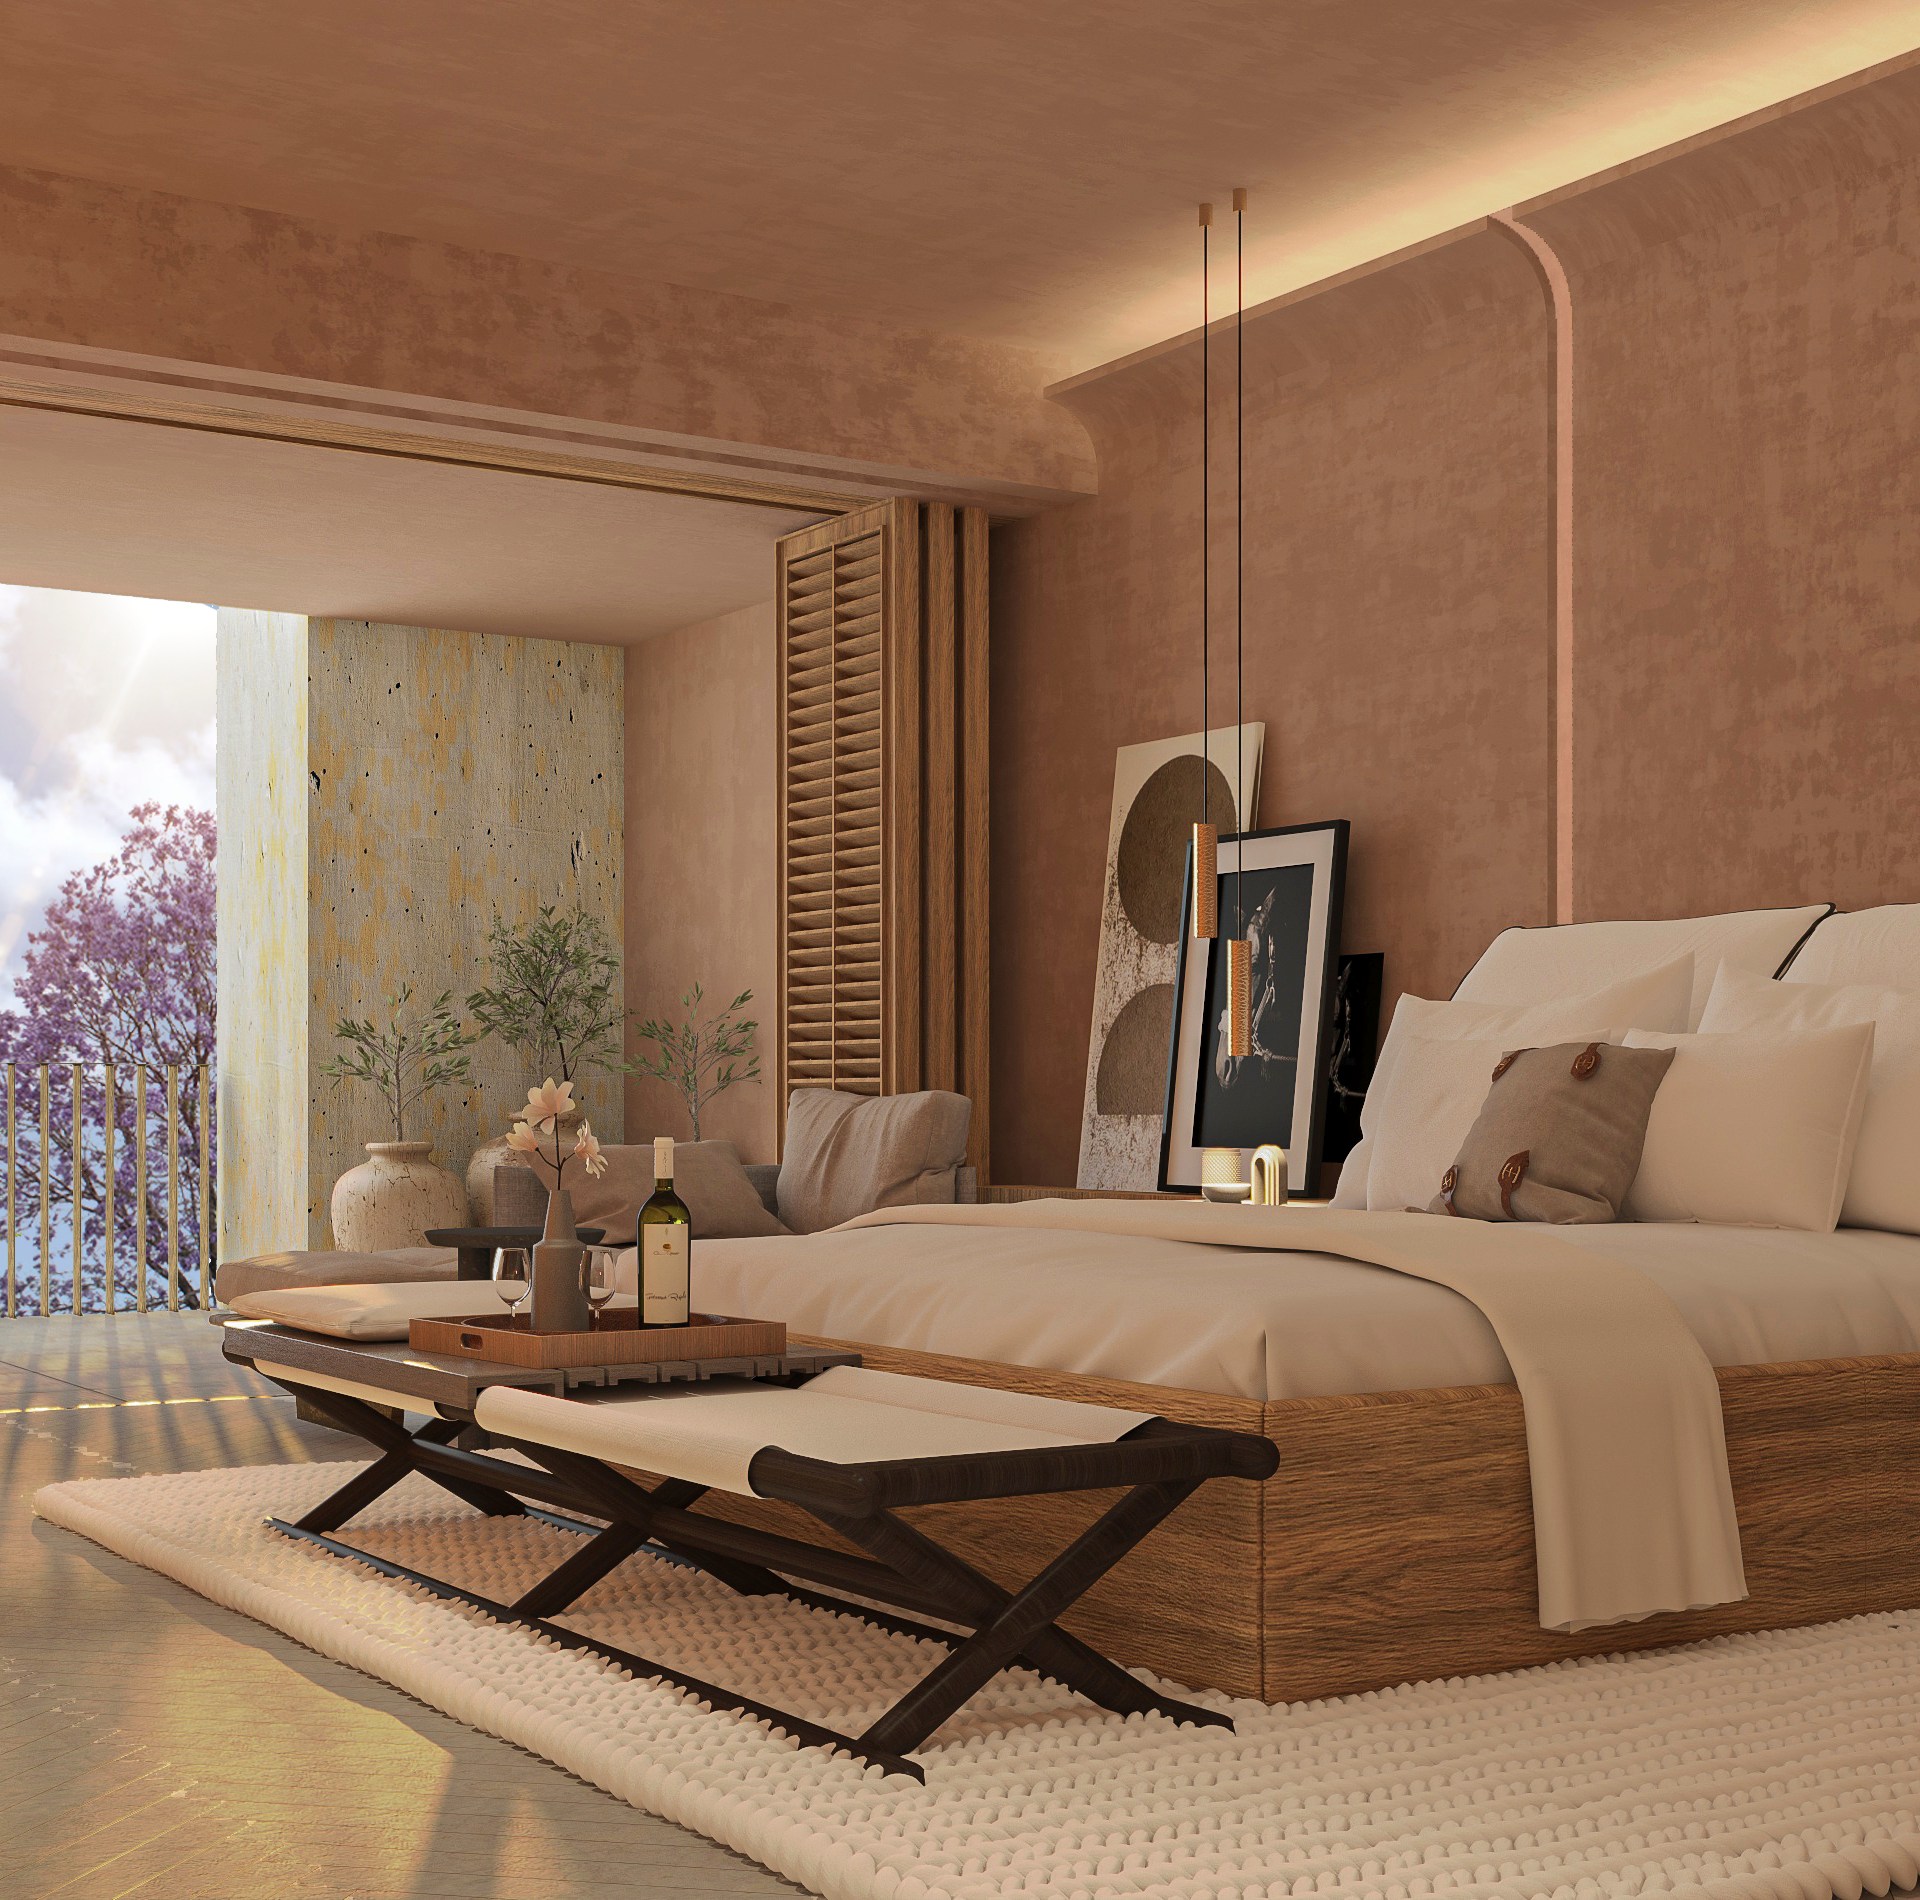 Waldorf Astoria San Miguel de Allende - Guest Room hotel luxury rendering